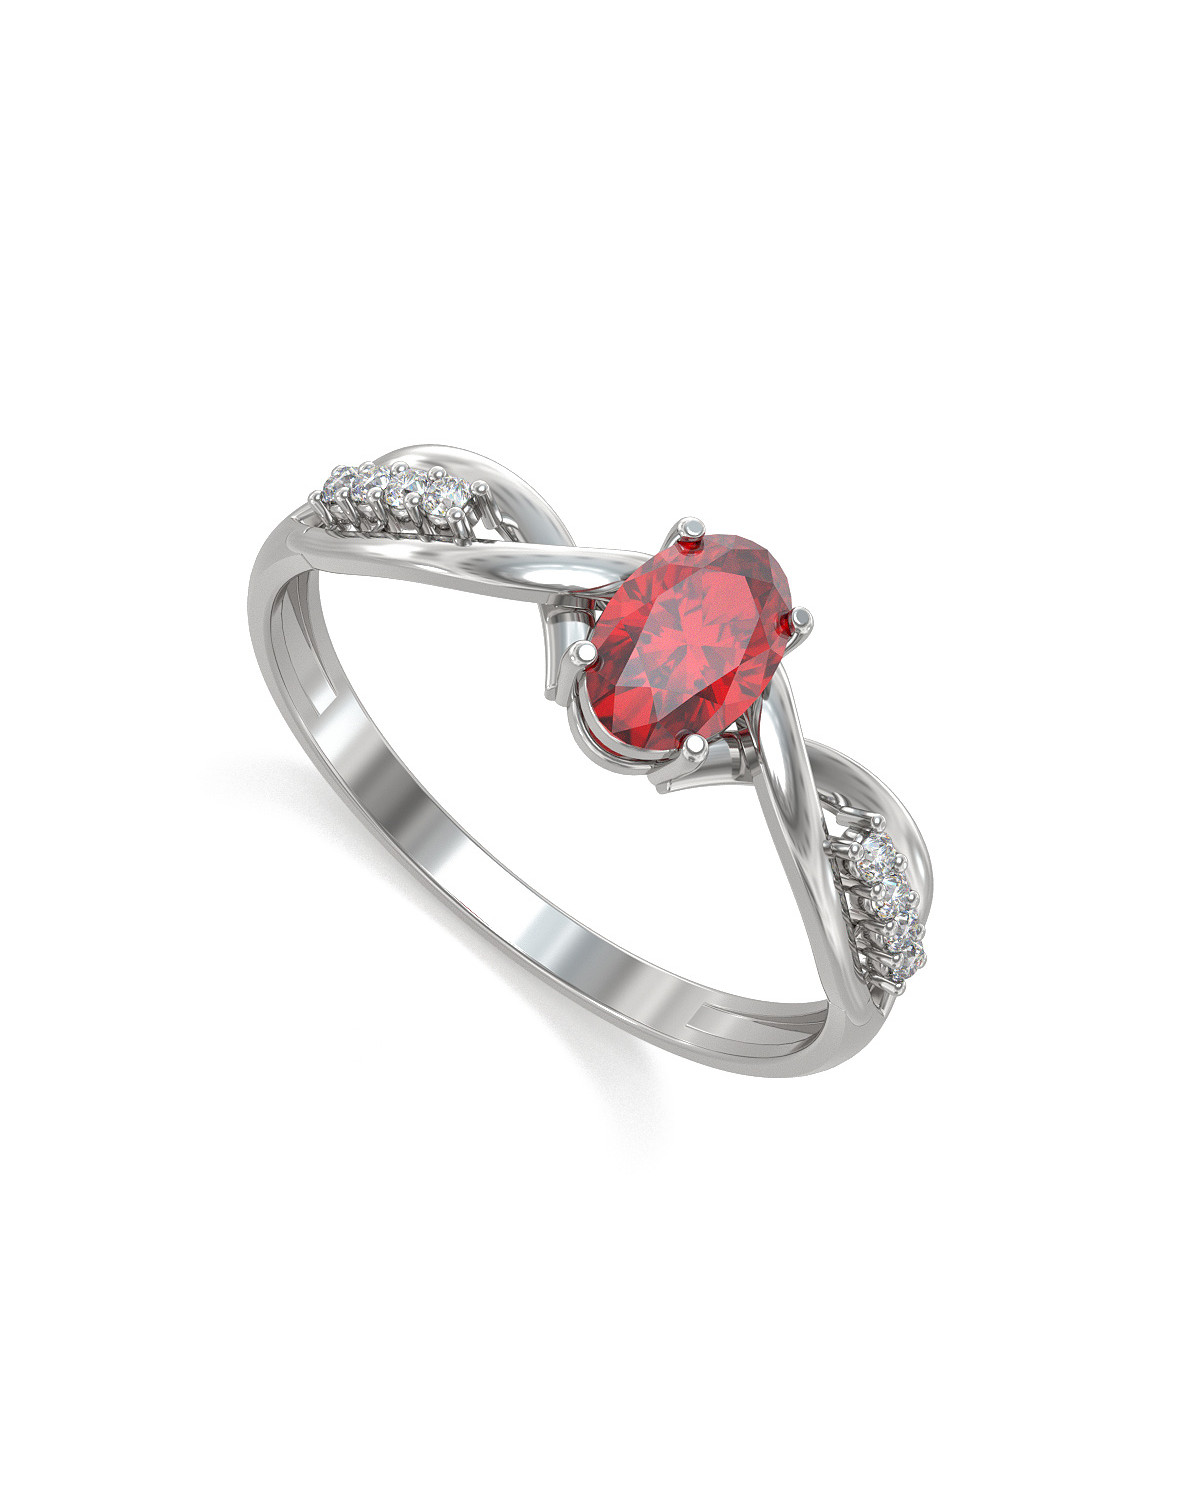 Anillo de compromiso 1 piedras de rubí reales con 4 diamantes en un anillo de plata rodio